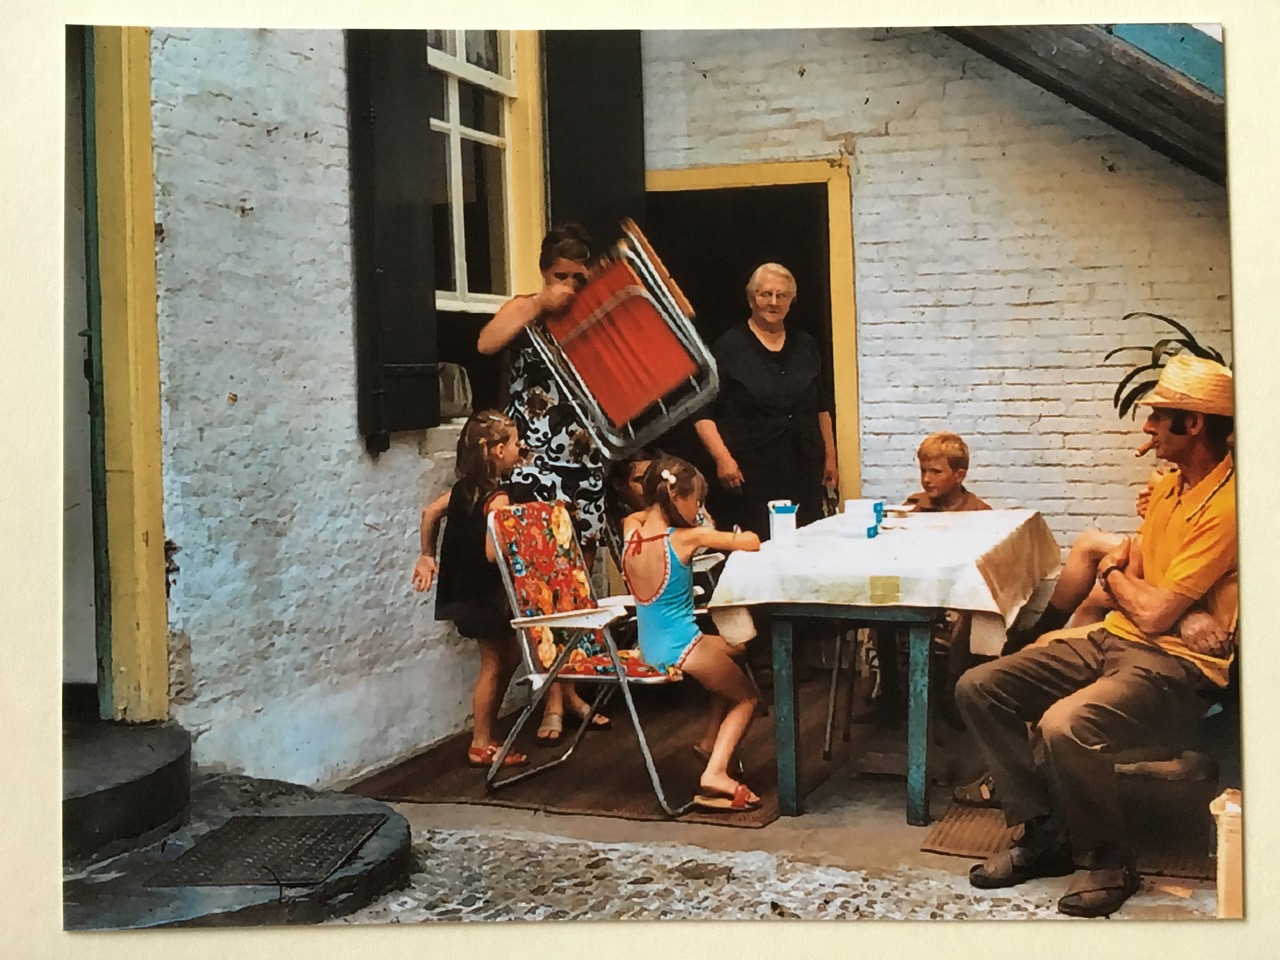 Op bezoek bij tante Jans, weduwe molenaar Verhoeven (ik ben het meisje helemaal links) met mijn 2 zussen en moeder (met stoel)